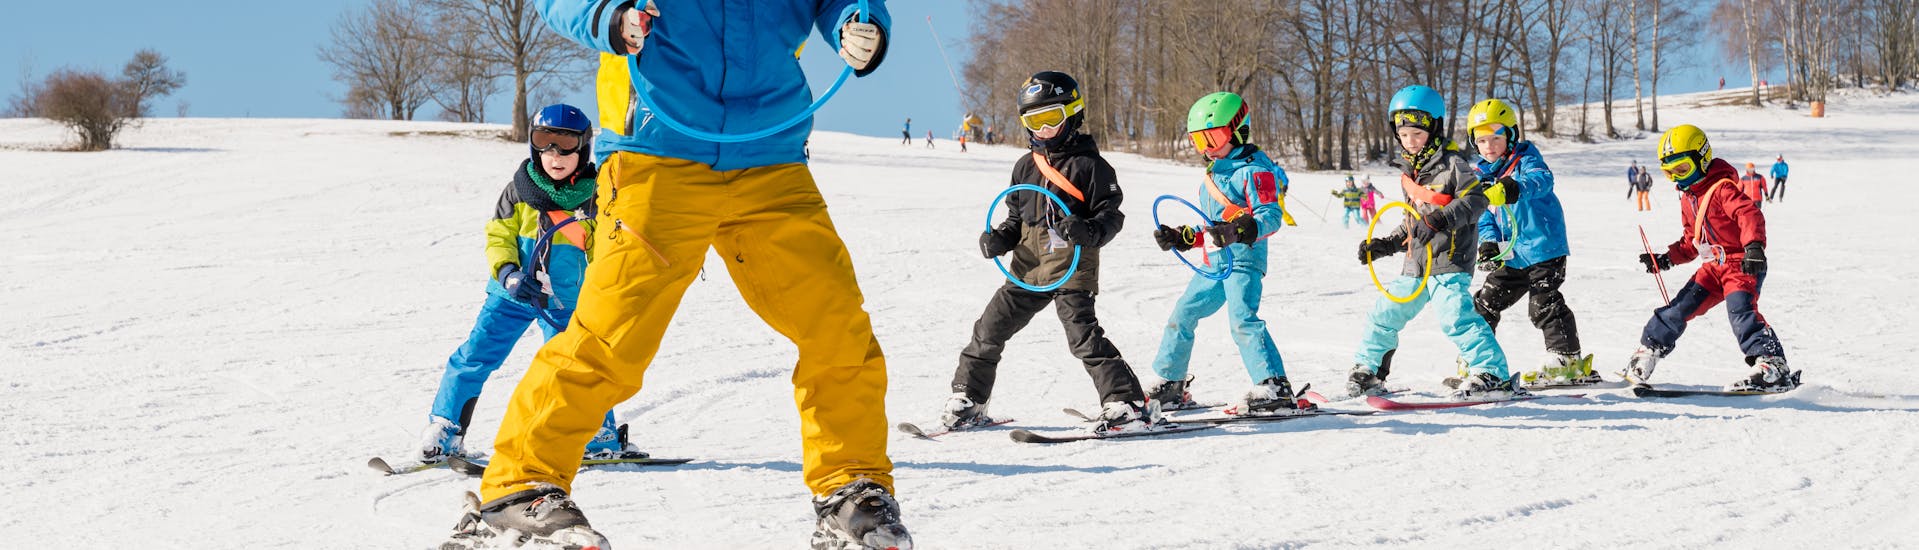 Skilessen voor kinderen vanaf 5 jaar - gevorderd.